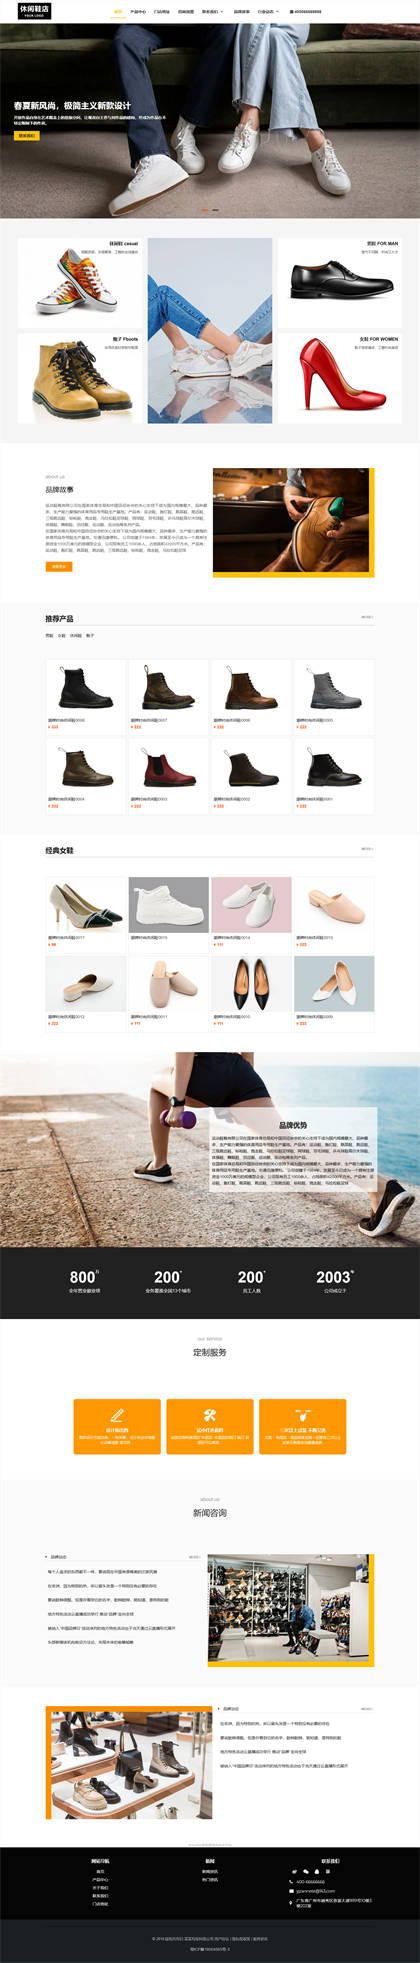 时尚休闲鞋-品牌运动鞋-品牌男鞋-品牌女鞋-鞋业企业网站模板网站建设网站模板预览图片